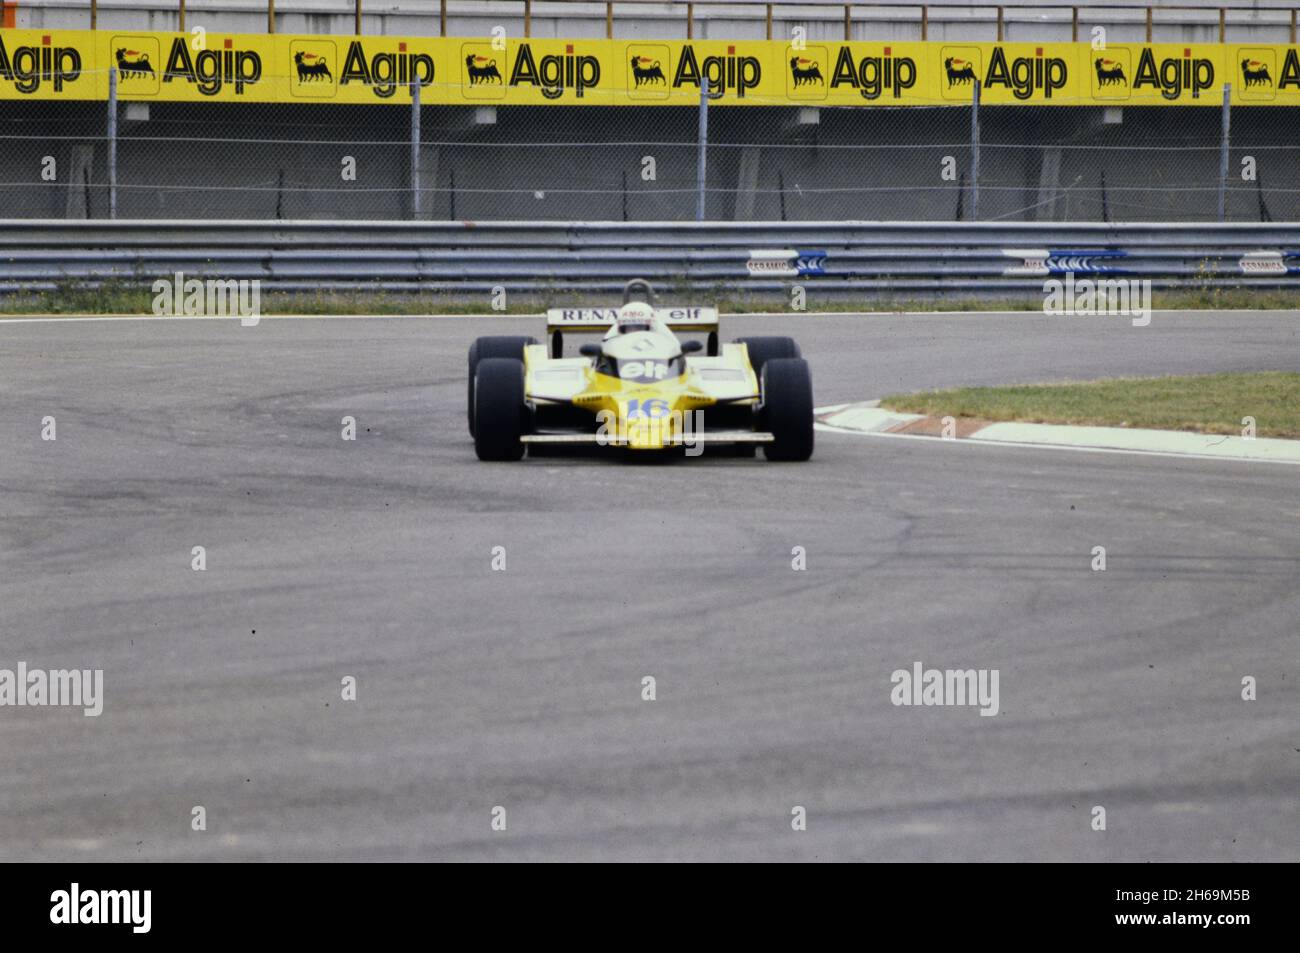 Imola, 1980: Essais de la Formule 1 au circuit Imola.René Arnoux en action sur Renault RE20 Turbo. Banque D'Images